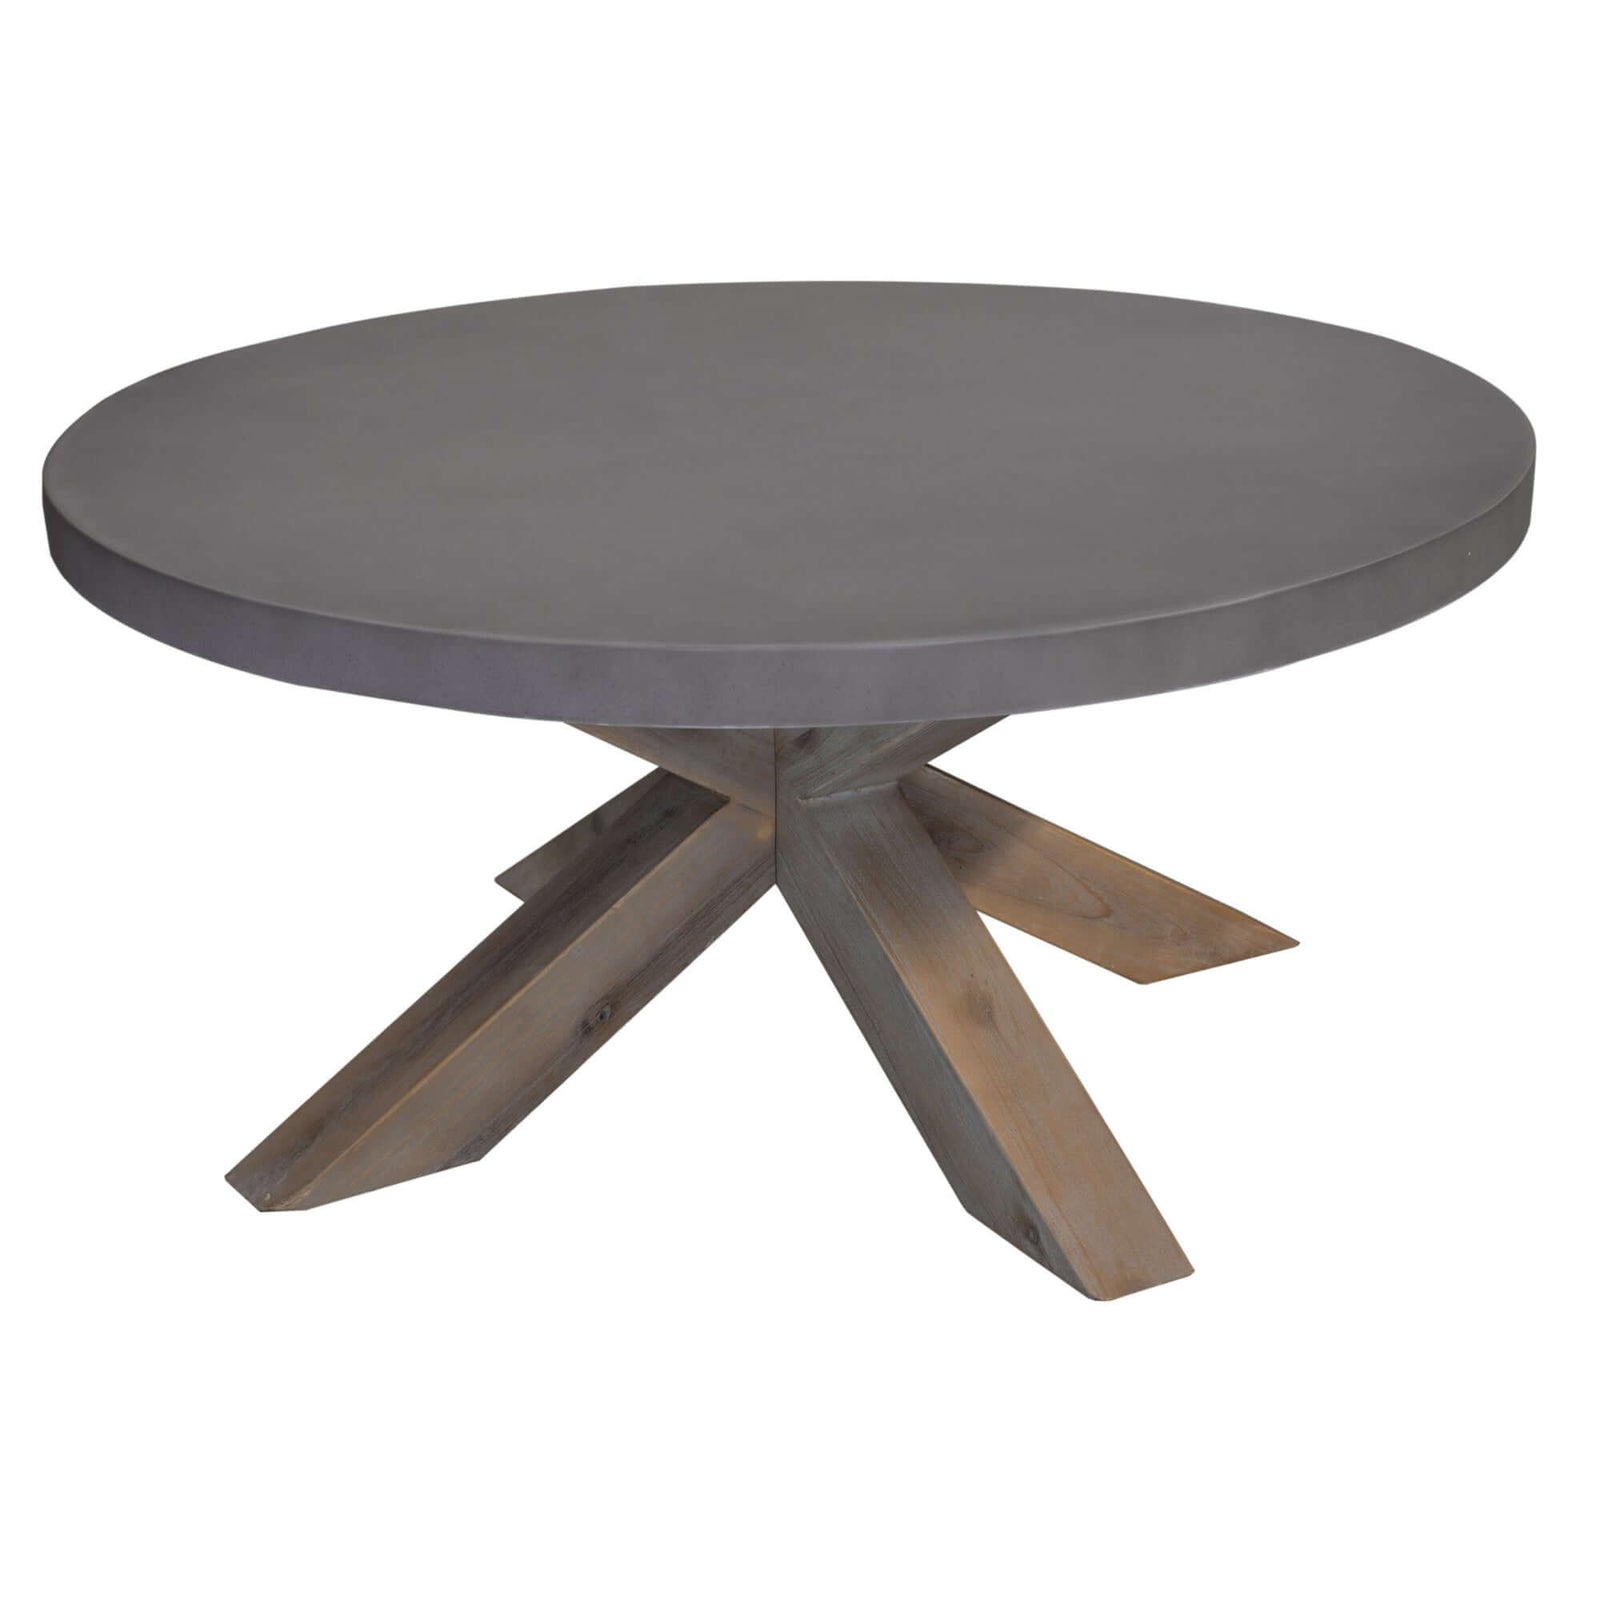 Stony Round Coffee Table - Grey Concrete Top-Upinteriors